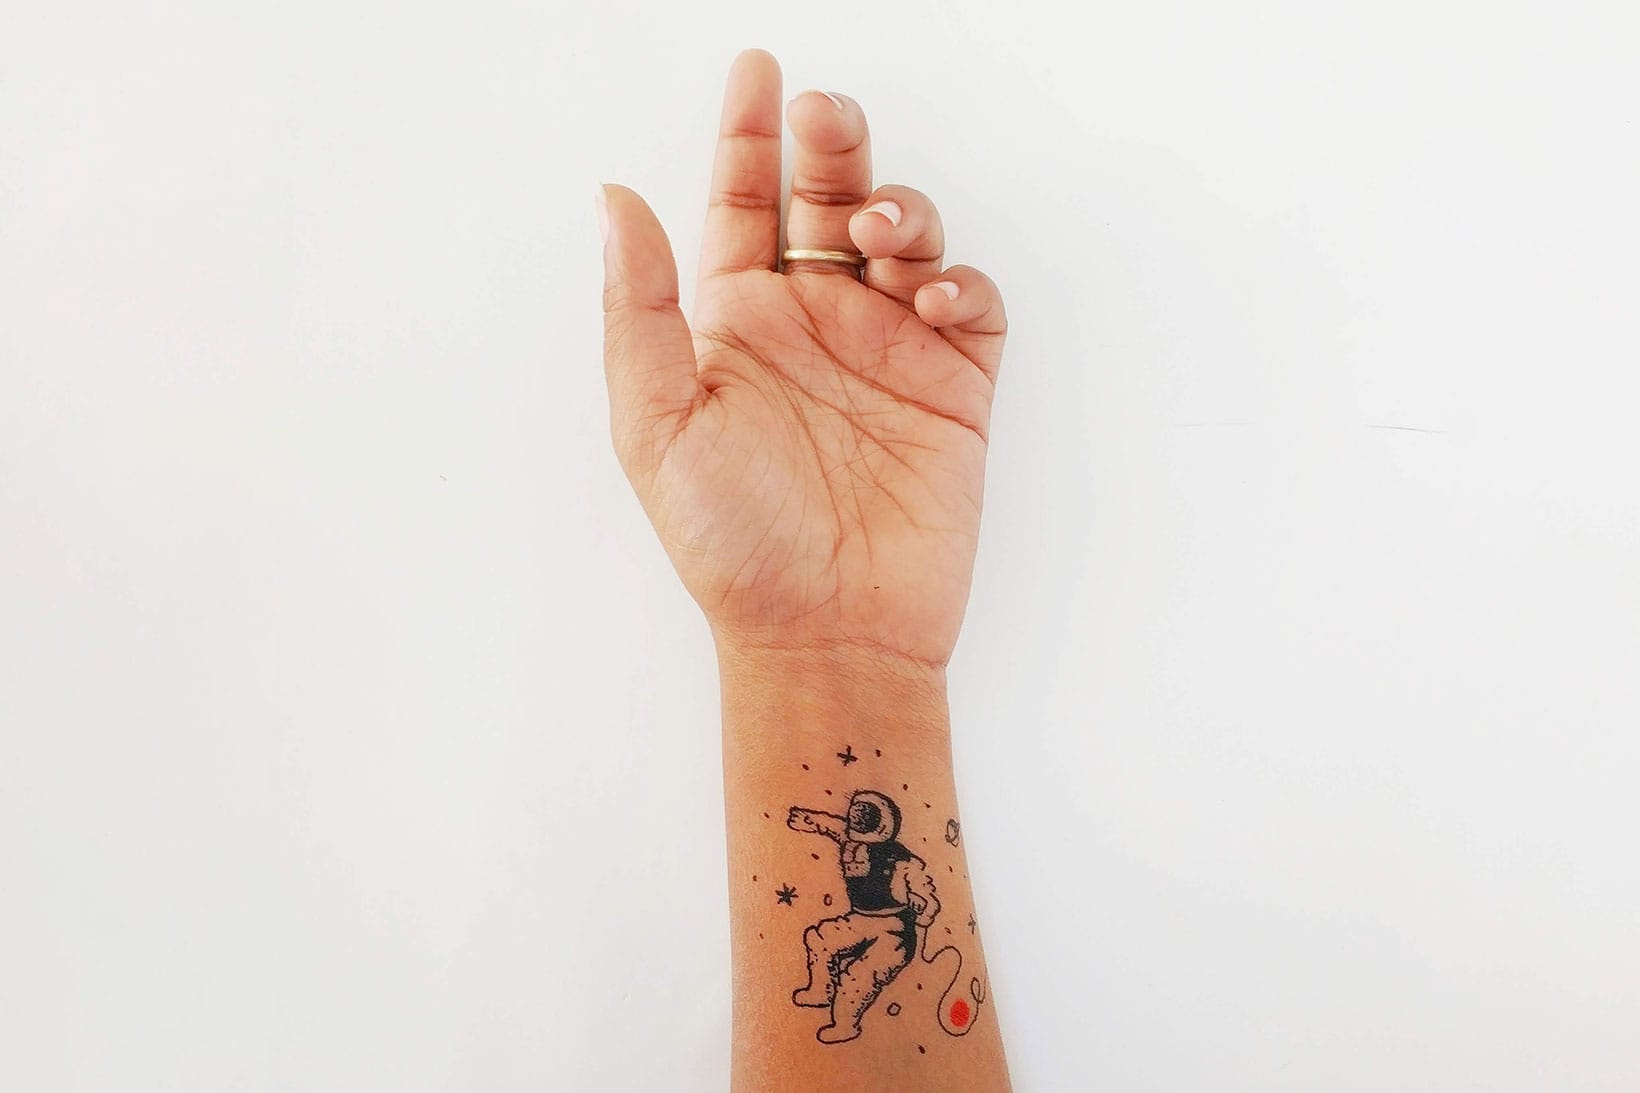 fukdaddio #daddio #chicago #chitown #jordan #ferriswheel #searstower  #watertower #chicagotheatre #sleeve #tattoo #tattoos … | Tattoos, Hand  tattoos, Chicago tattoo